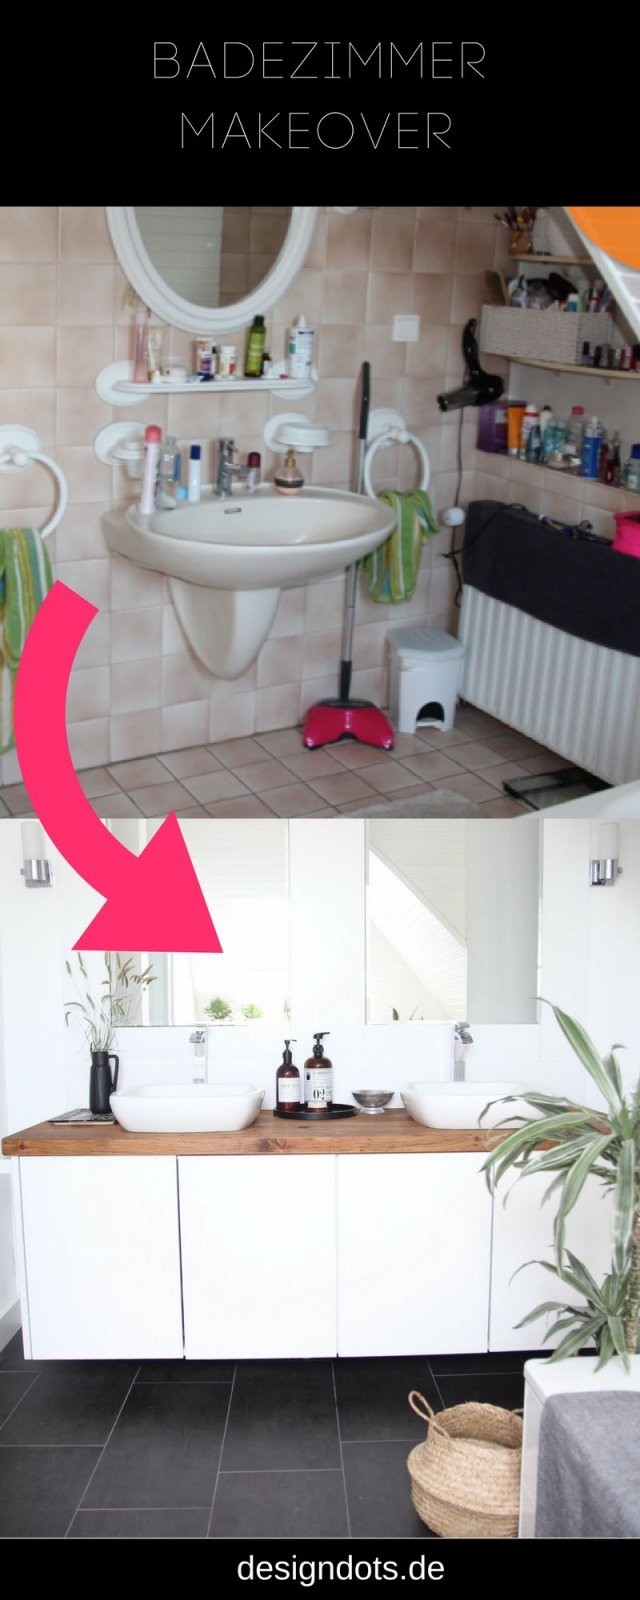 Badezimmer Selbst Renovieren Vorhernachher  My Room  Badezimmer von Bad Selber Renovieren Kosten Bild